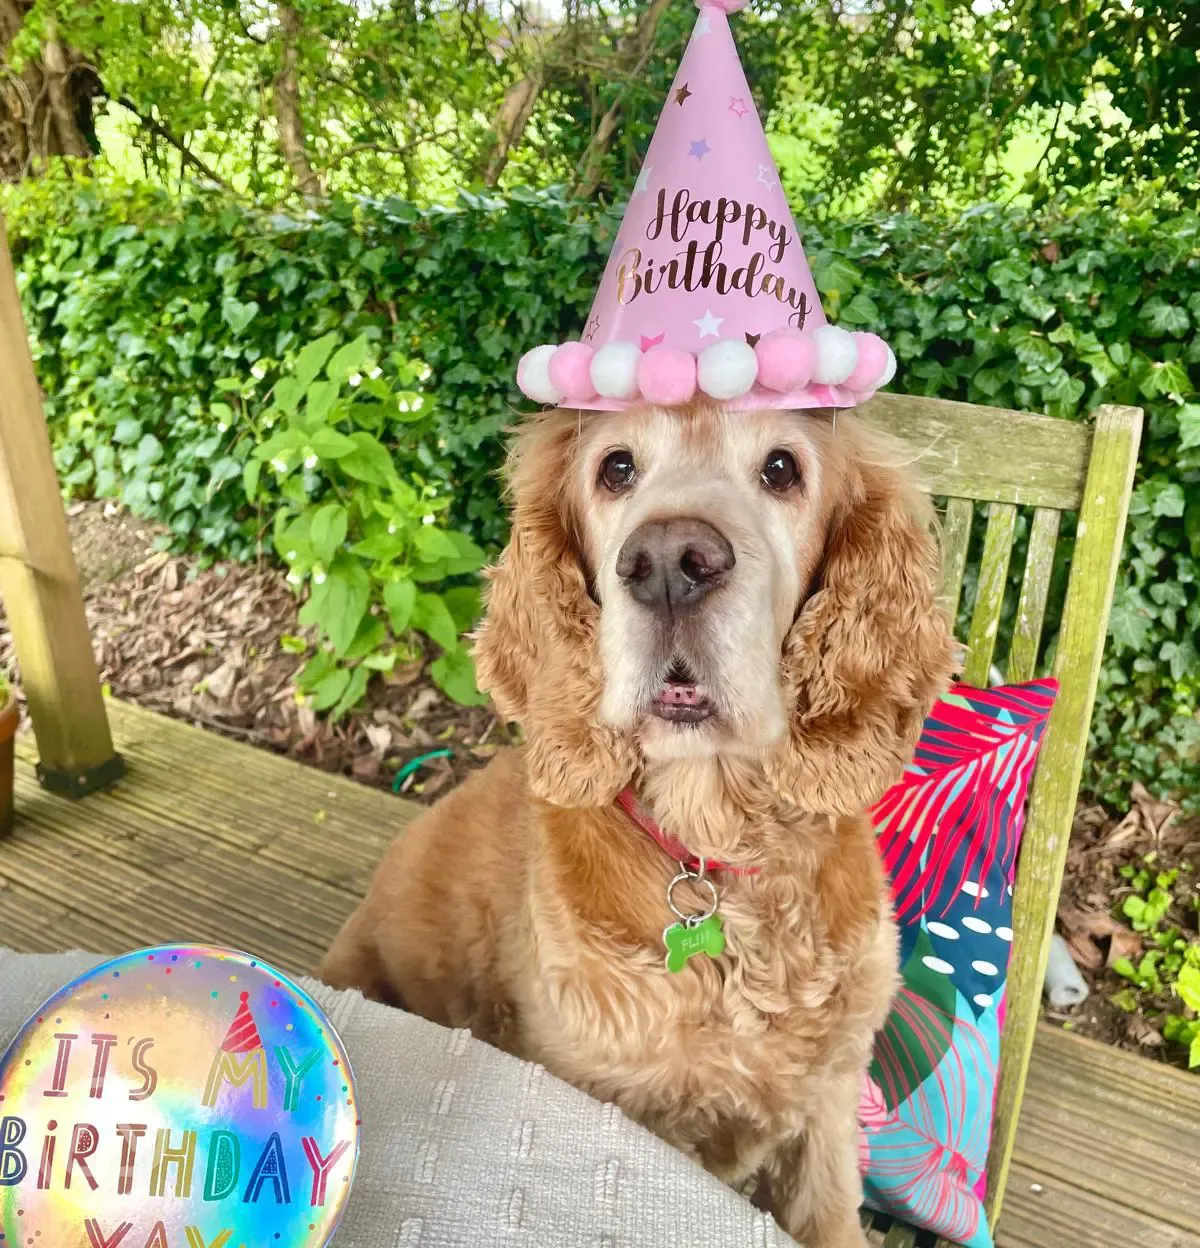 Birthday dog celebrations